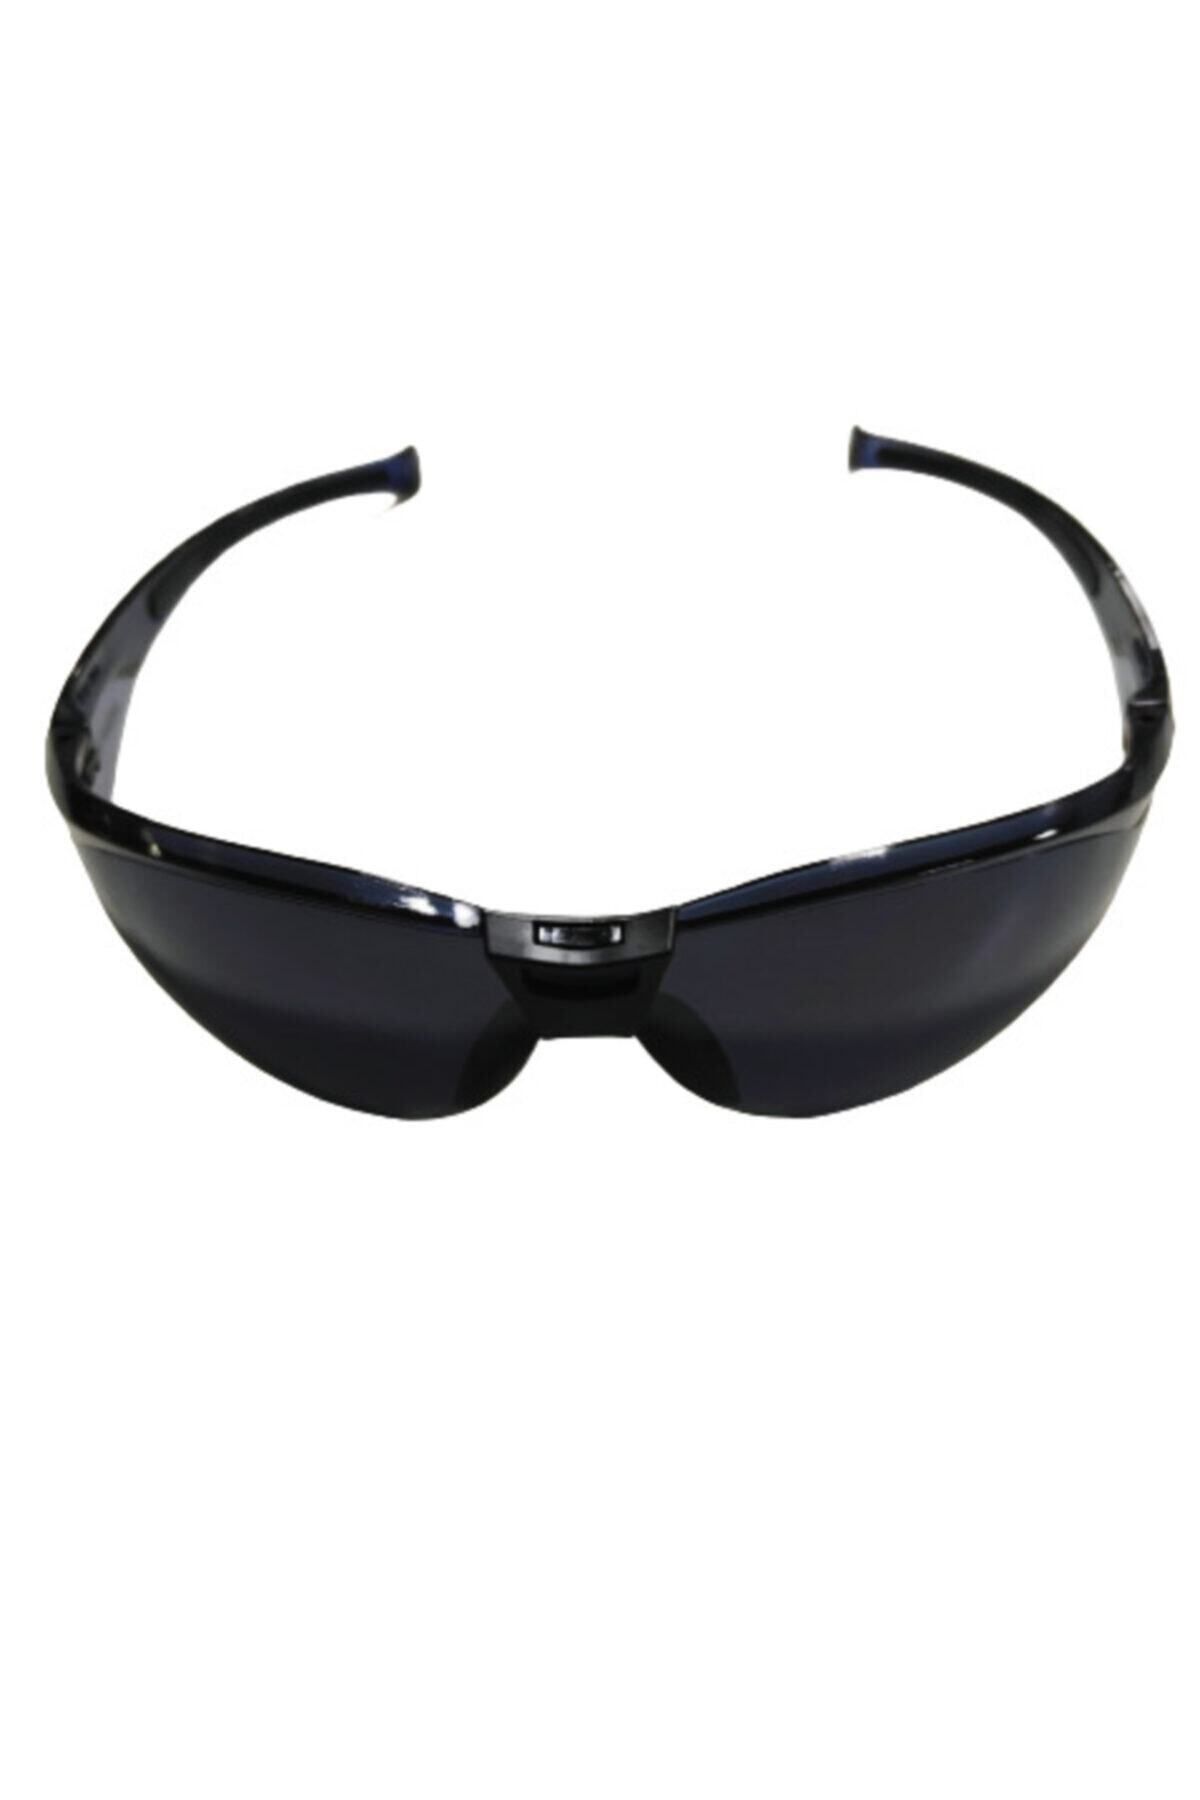 Energy E 500 Sport Füme Koruyucu Gözlük Kaynak Çapak Iş Gözlüğü